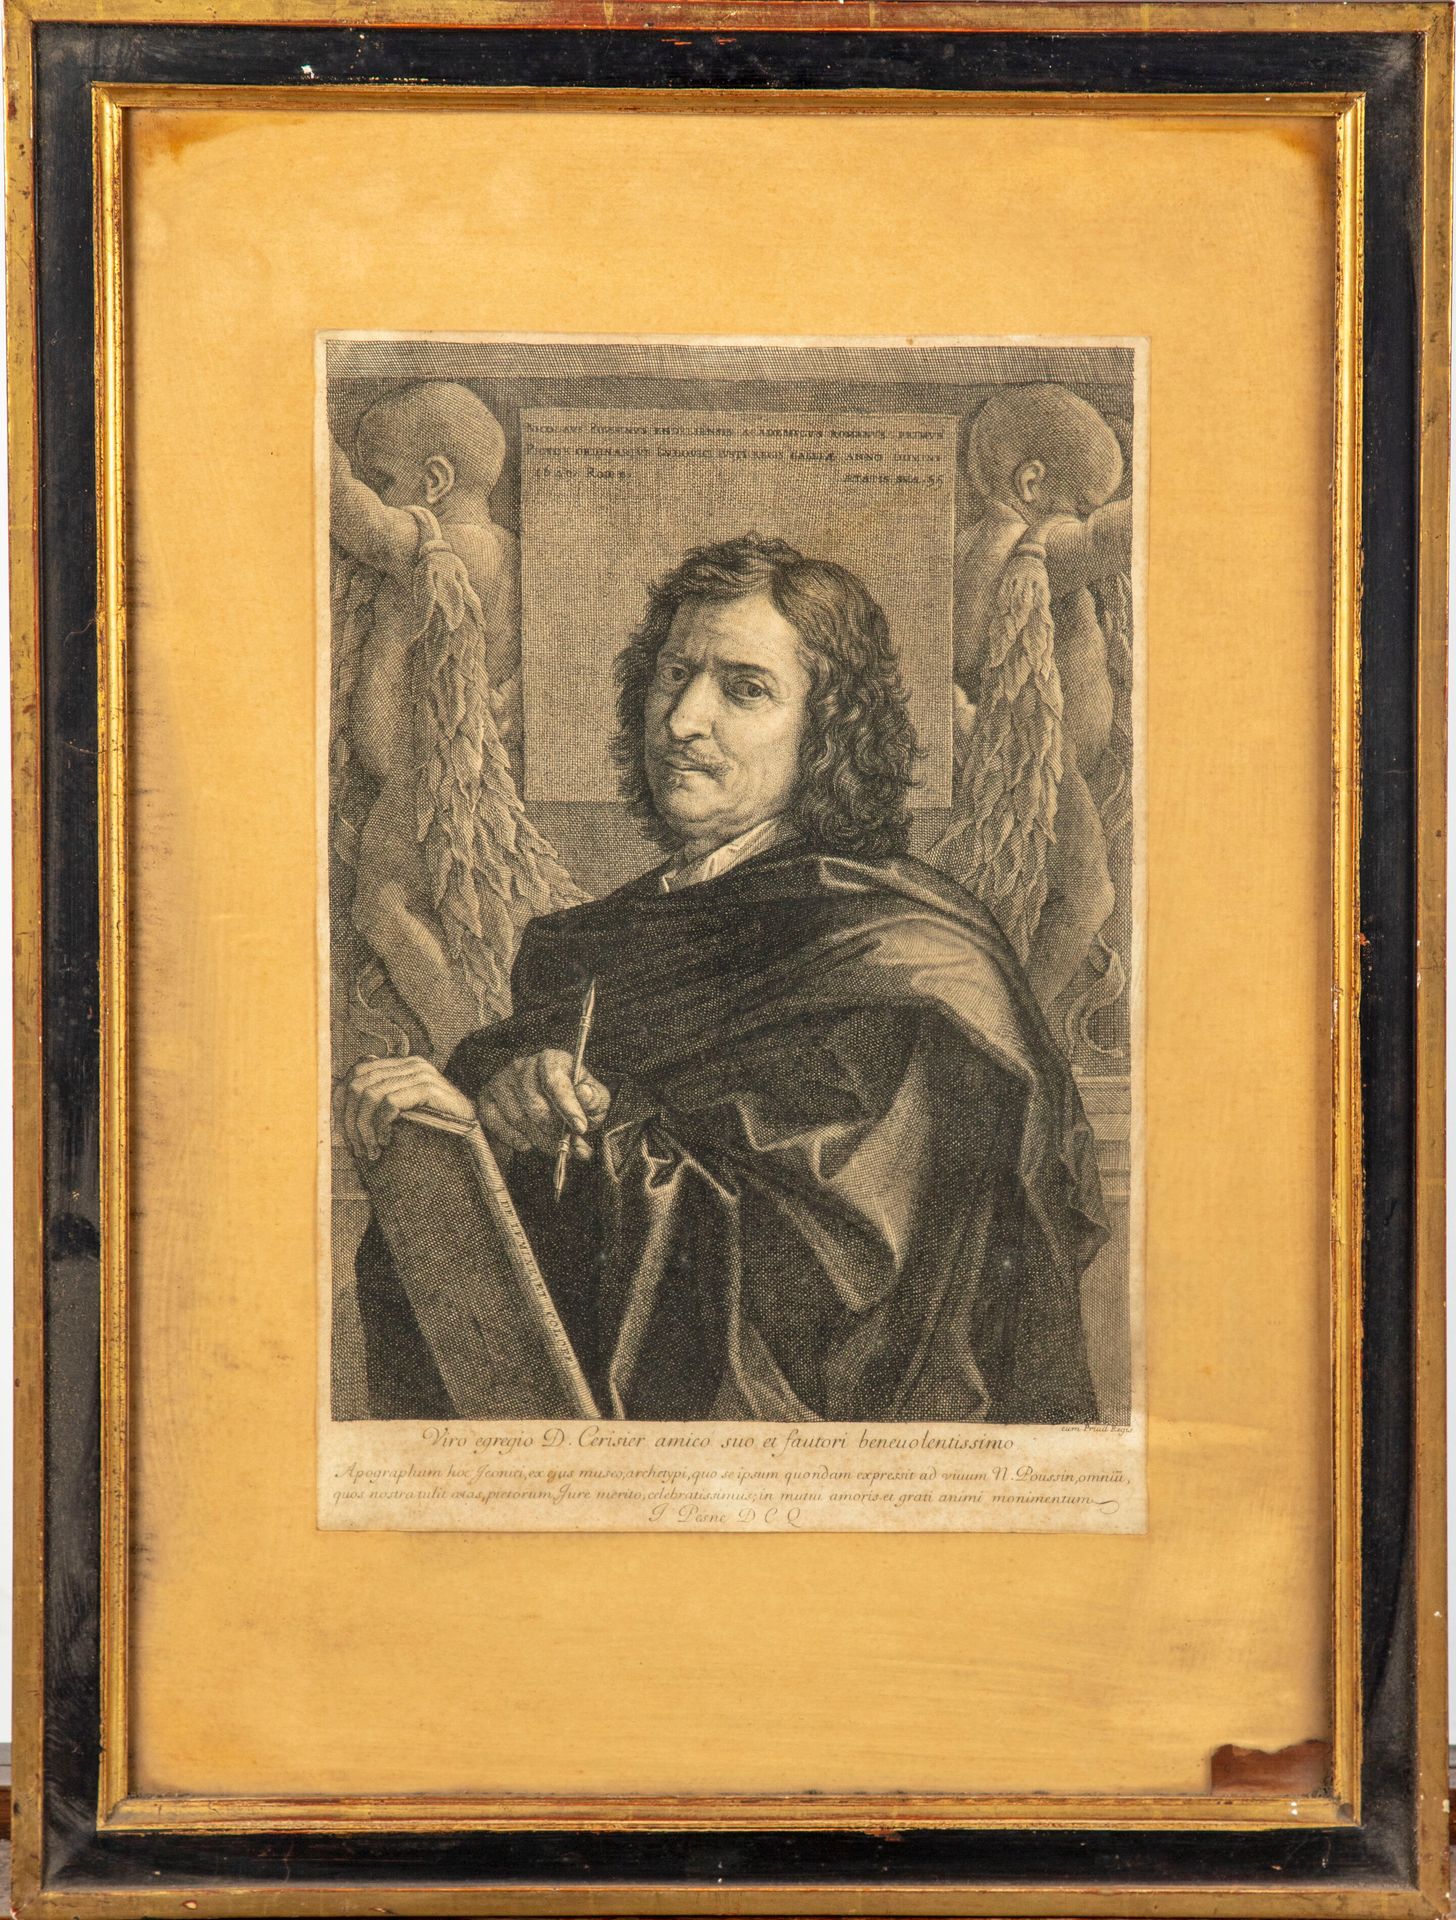 PASNE Jean PESNE (1623 - 1700)

Kupferstich nach dem Selbstporträt von Nicolas P&hellip;